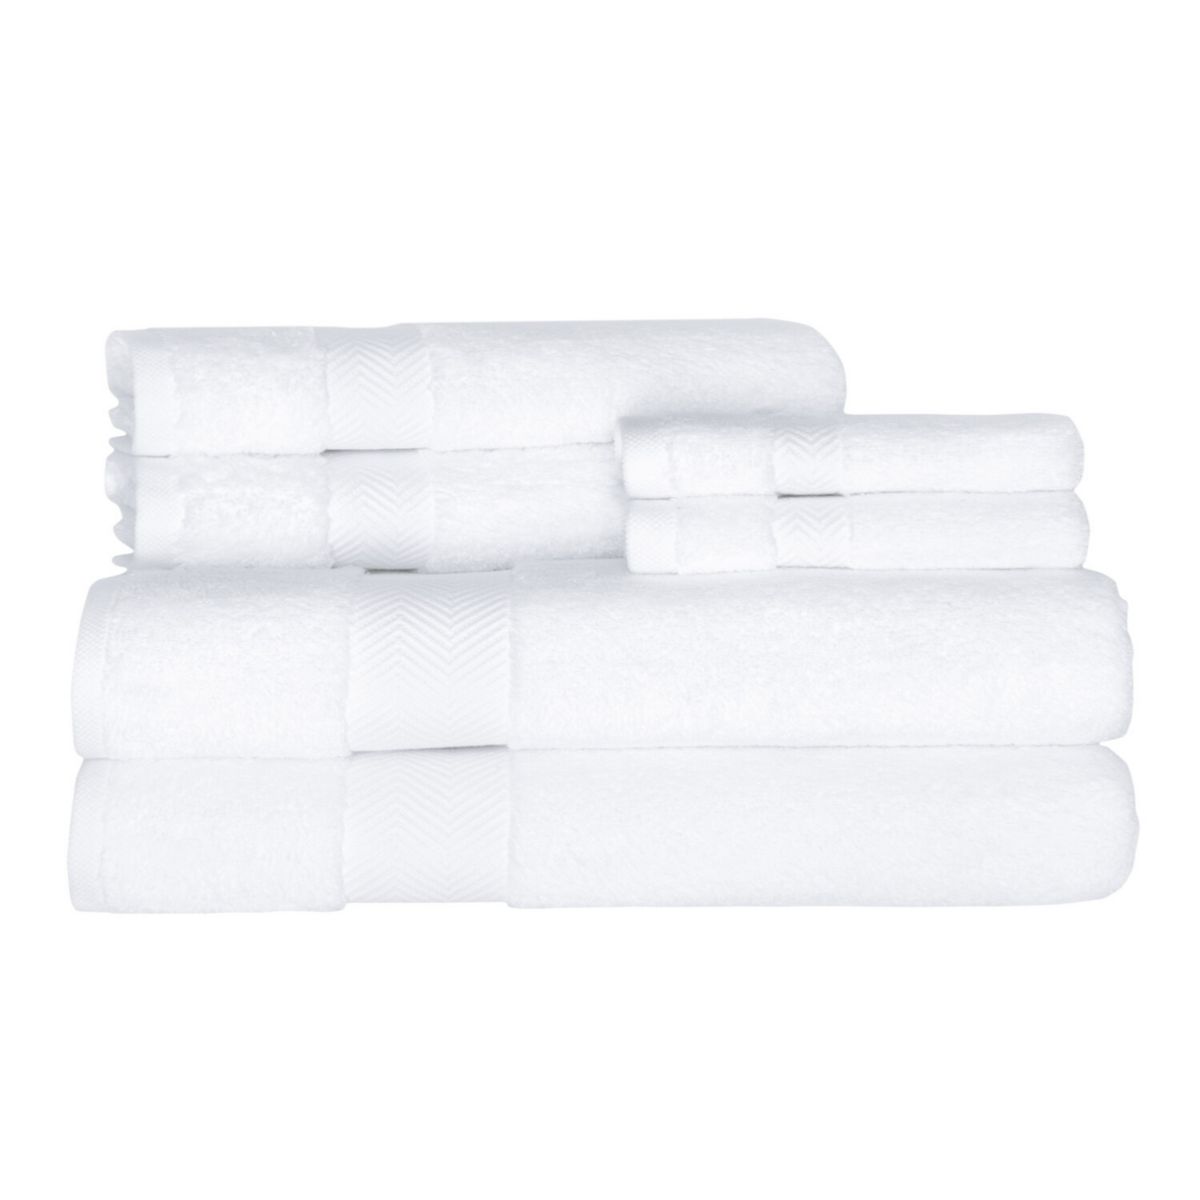 Классические турецкие полотенца из натурального хлопка, мягкие впитывающие вещества, роскошный комплект Becci из 6 предметов: 2 банных полотенца, 2 полотенца для рук, 2 мочалки Towels Beyond